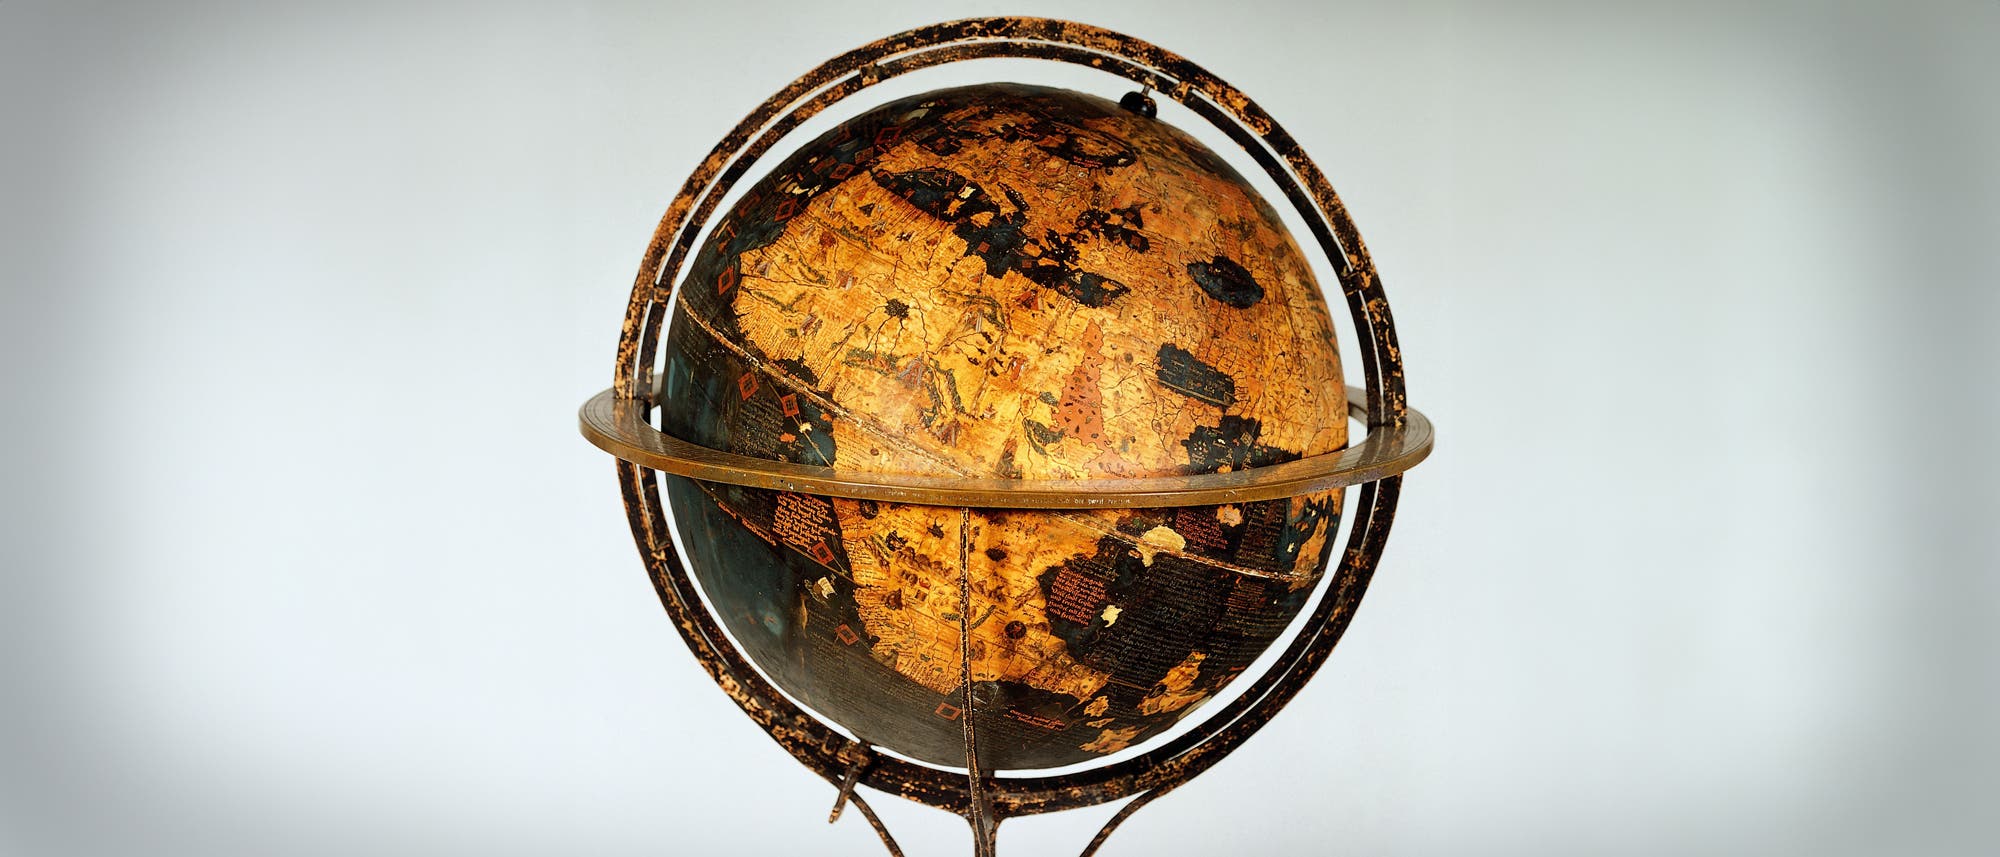 Der erste Globus der Welt von Martin Behaim im Germanischen Nationalmuseum in Nürnberg.